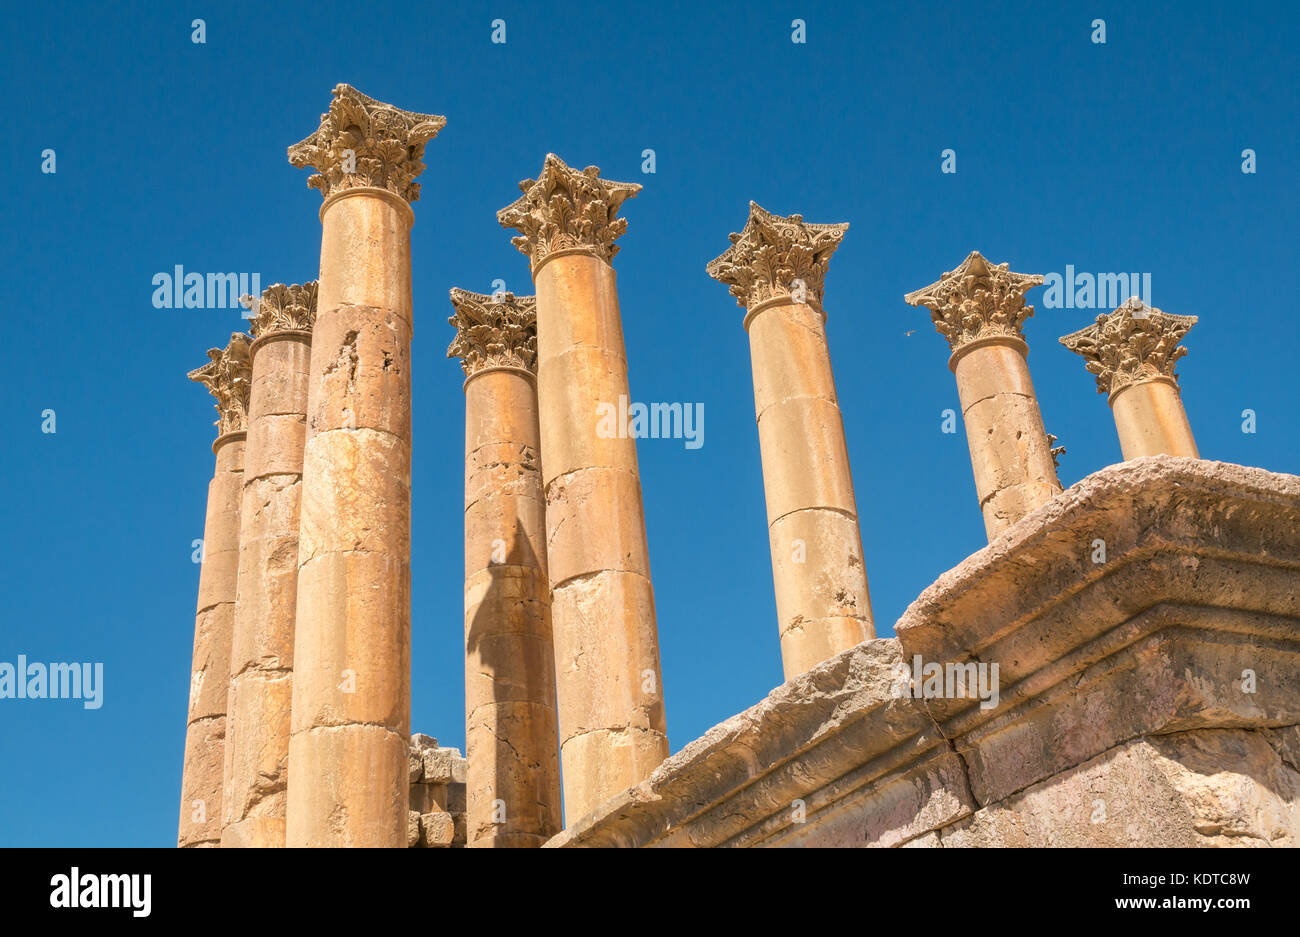 Colonne corinzie al tempio di Artemide nella città romana di Jerash, antica Gerasa, sito archeologico nel nord della Giordania, Medio Oriente Foto Stock